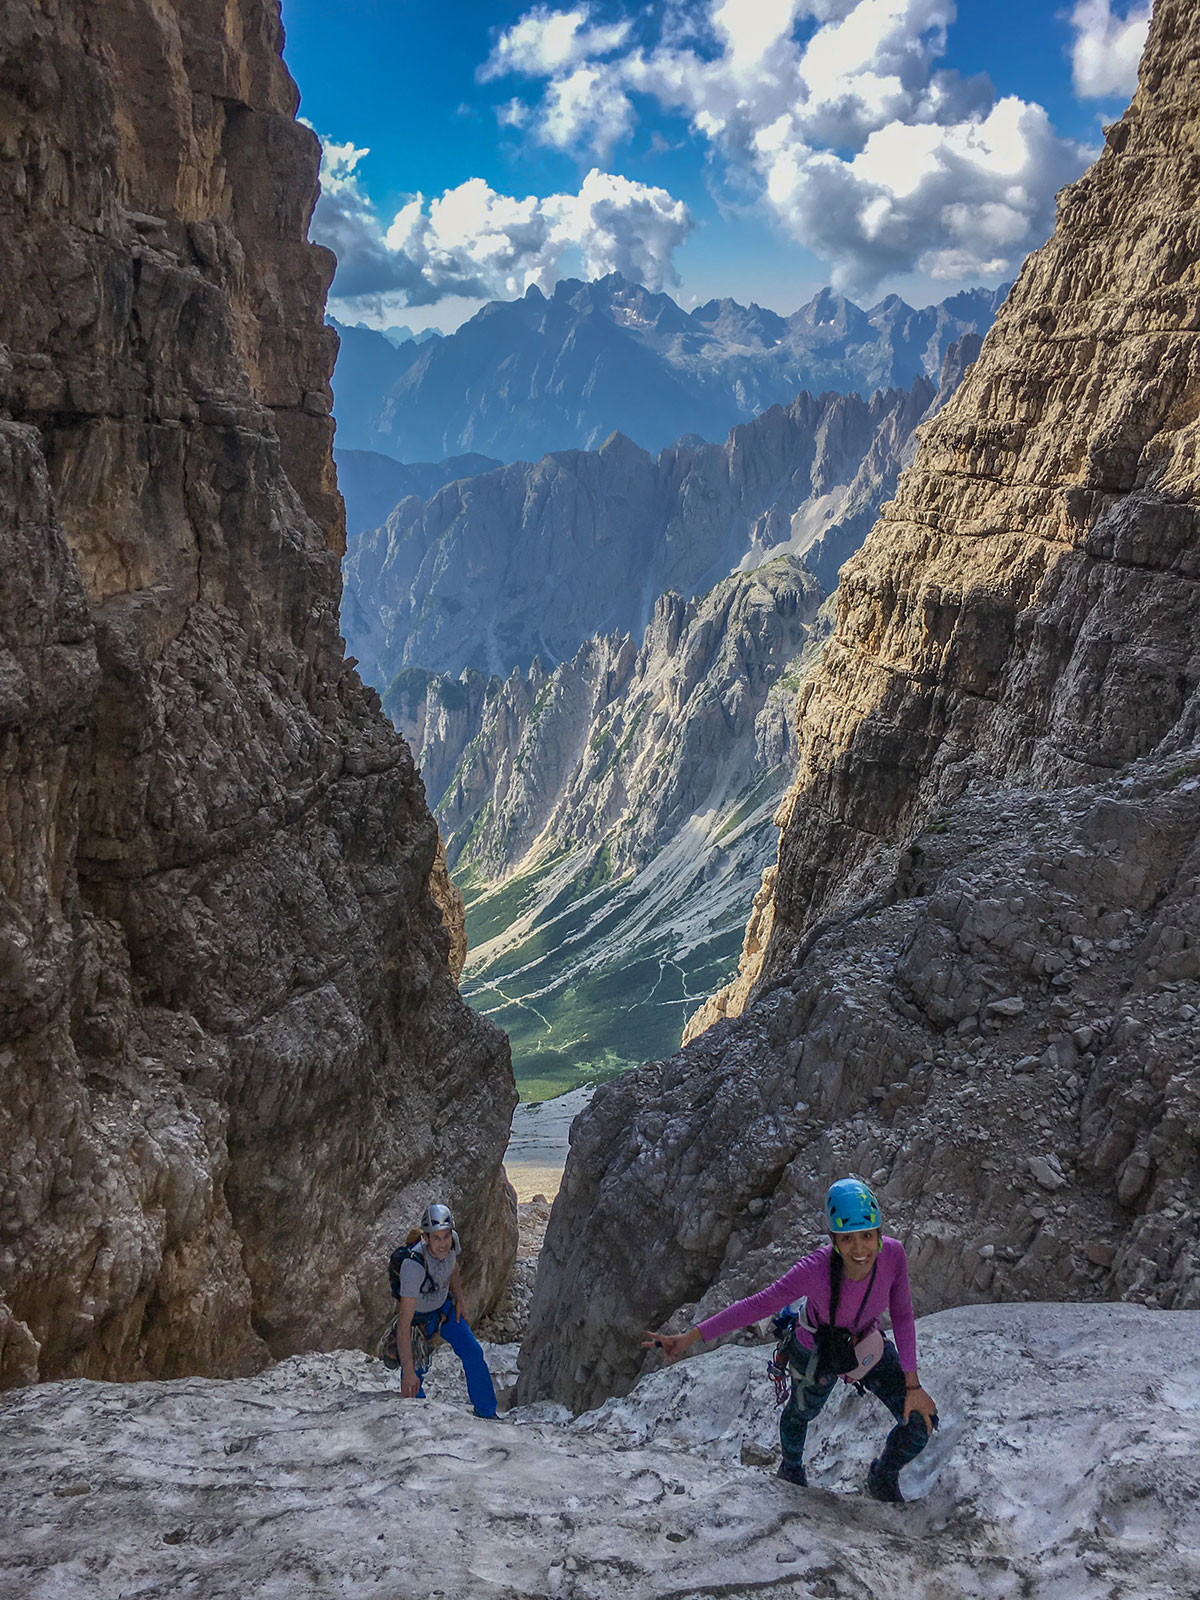 Three Peaks Dolomites, Italy - Northface of the Big Pinnacle, 